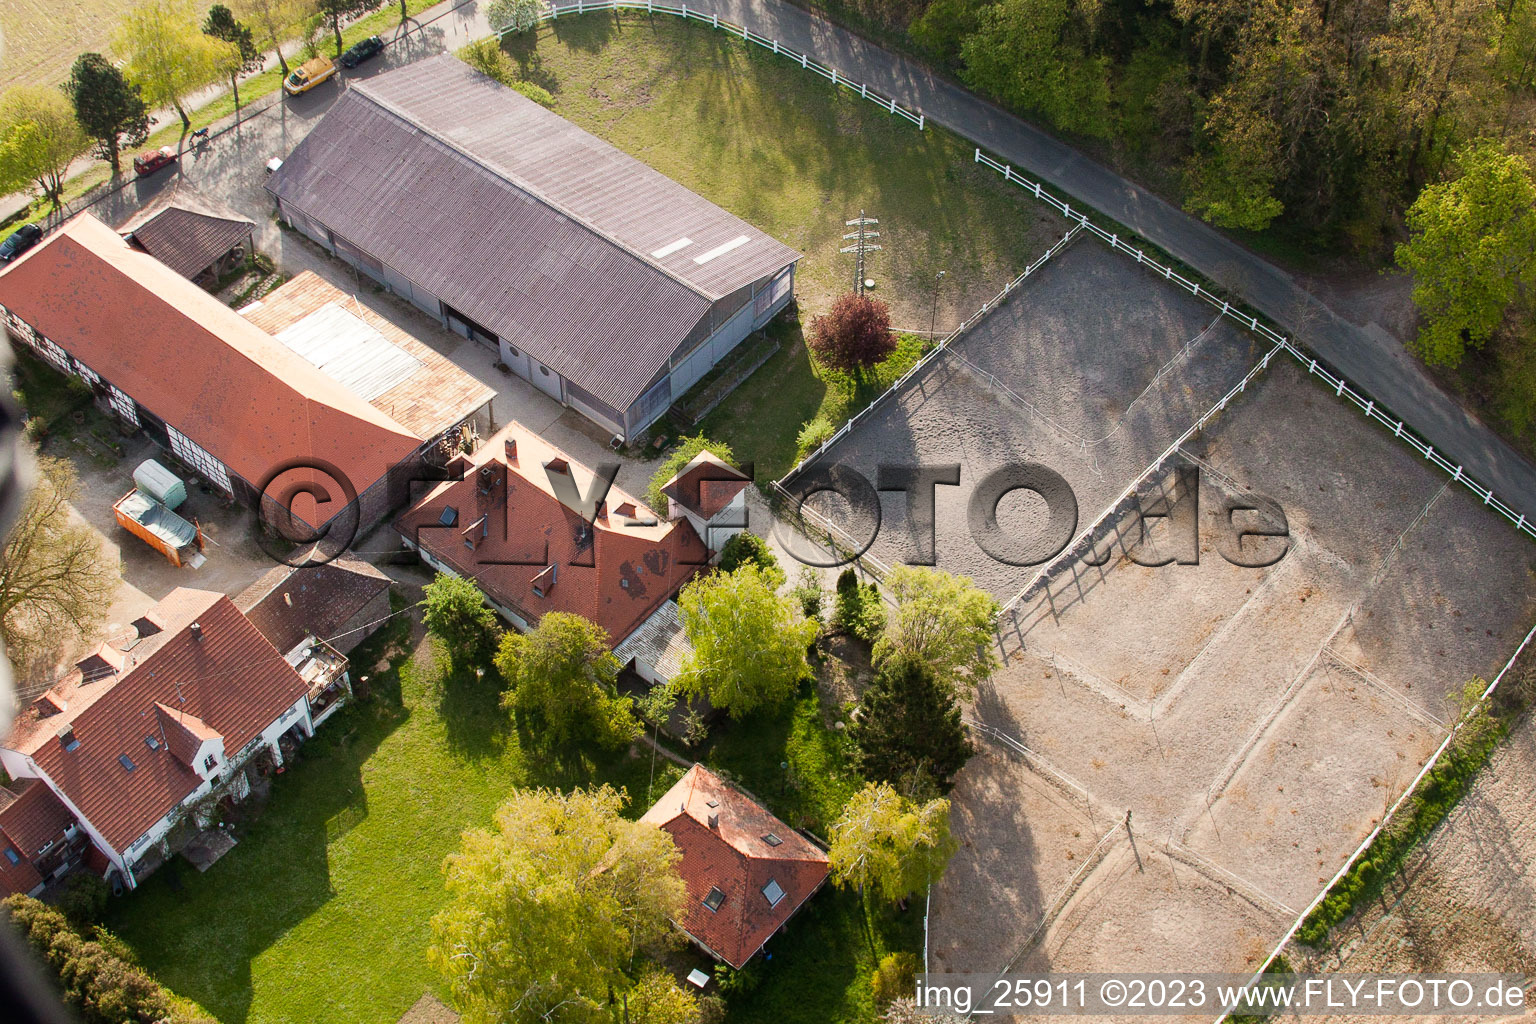 Rittnerthof à le quartier Durlach in Karlsruhe dans le département Bade-Wurtemberg, Allemagne du point de vue du drone